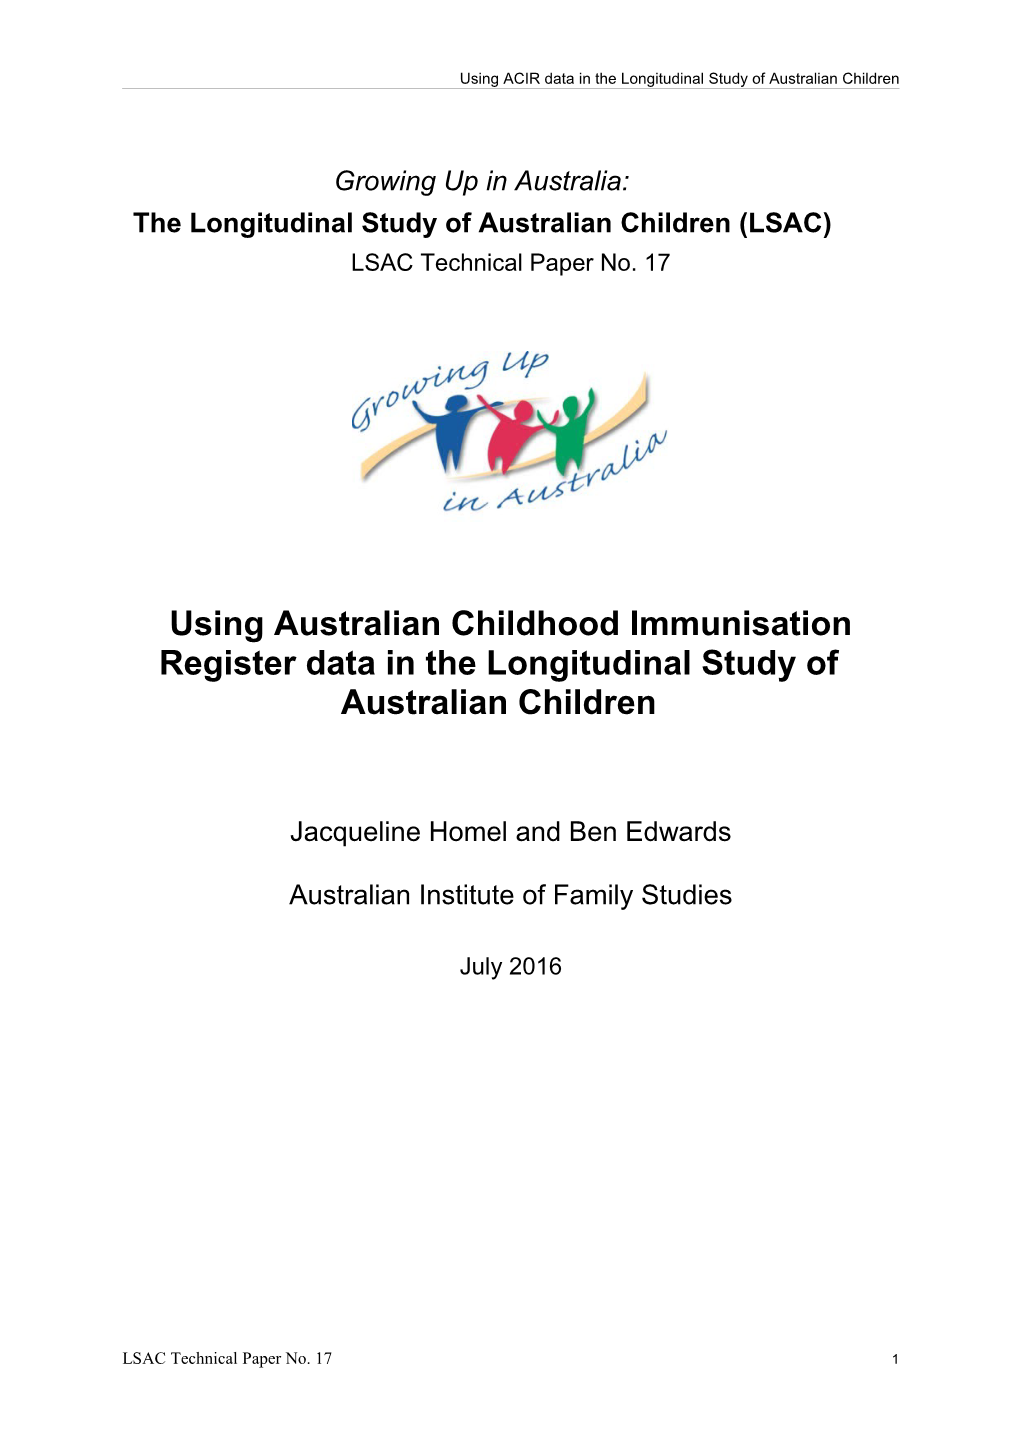 Using Australian Childhood Immunisation Register Data in the Longitudinal Study of Australian